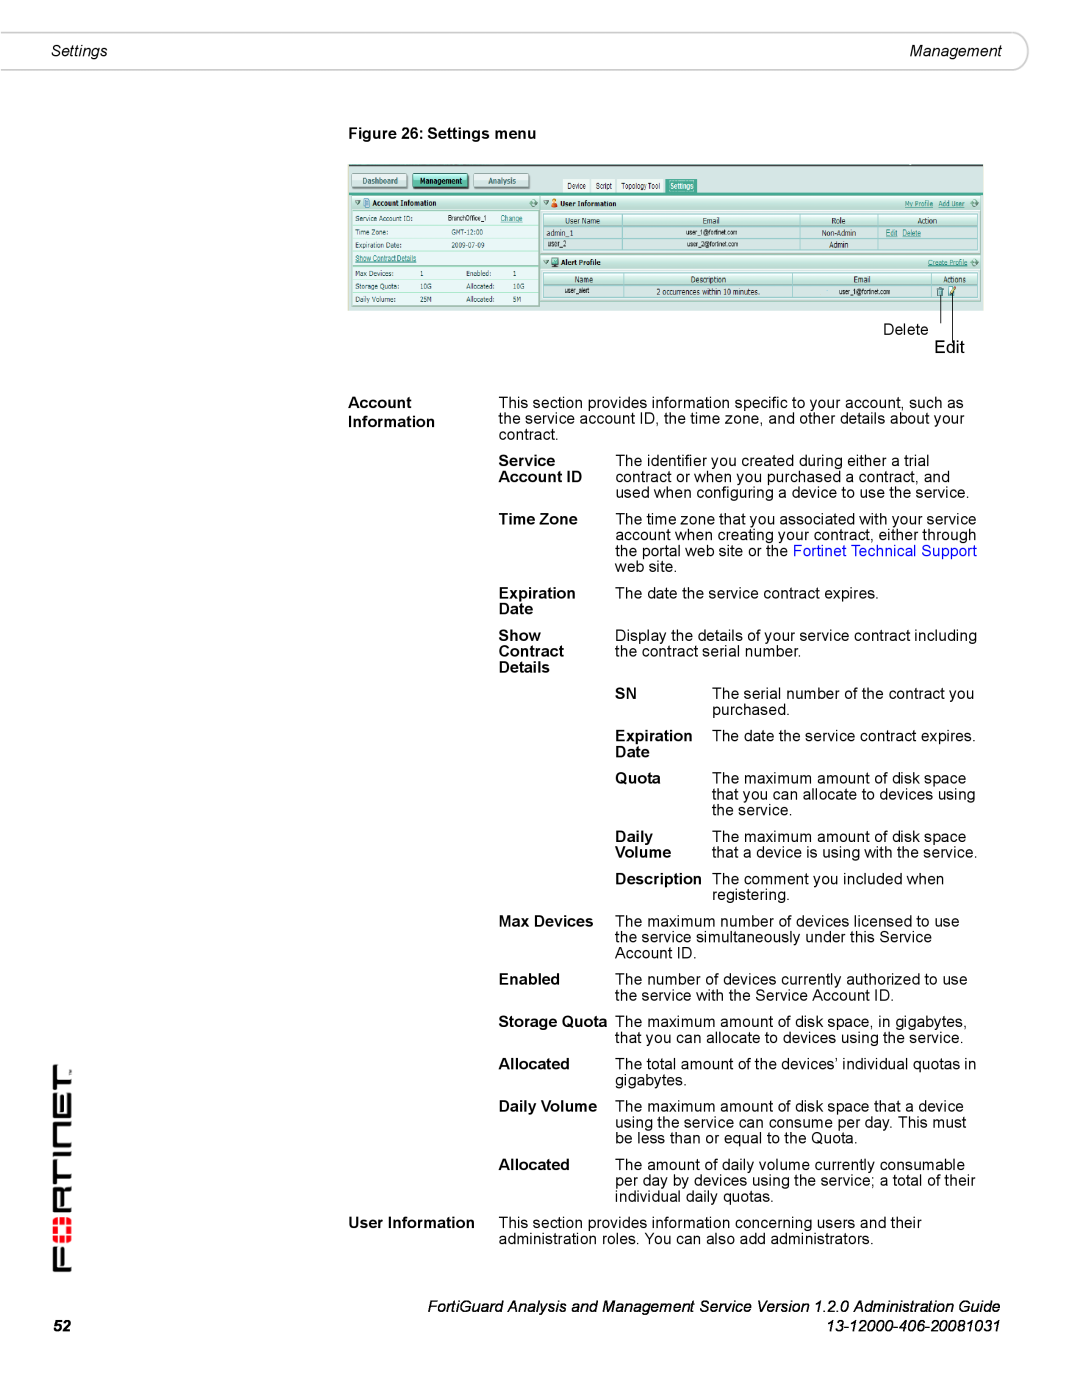 Fortinet 1.2.0 manual Edit, Settings, 13-12000-406-20081031 